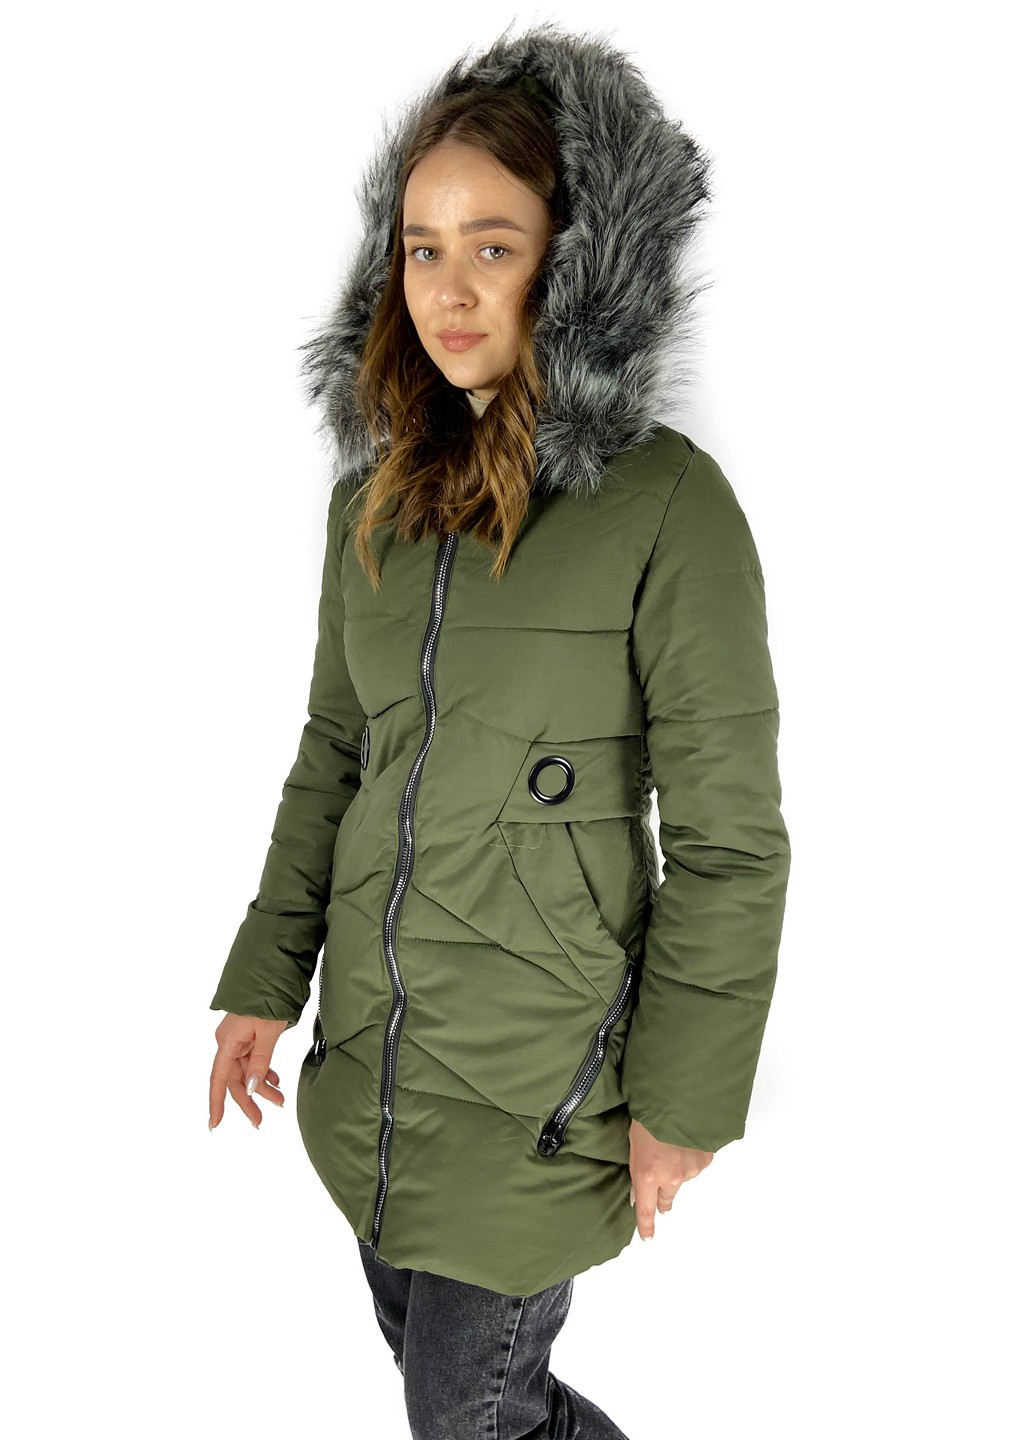 Оливковая (хаки) зимняя куртка M.S.TaiL